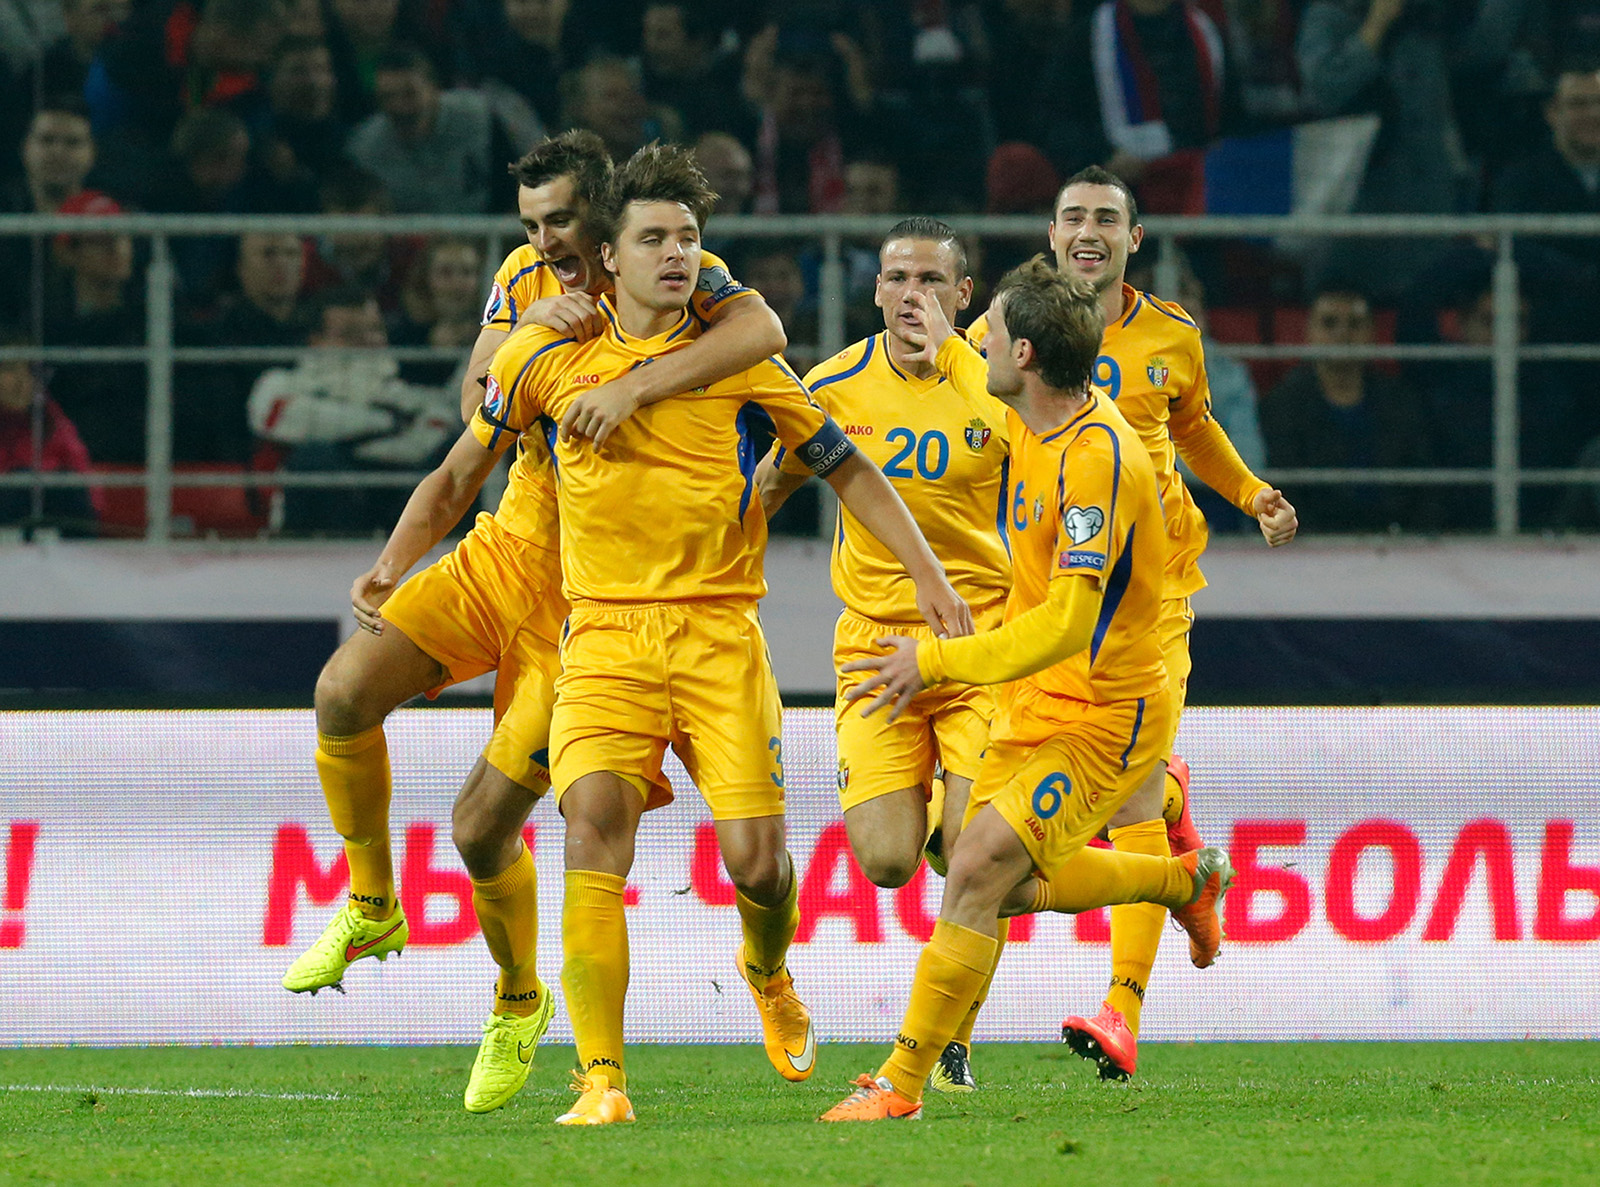 נבחרת מולדובה במשחק נגד נבחרת רוסיה, 2014. איפה מסל? (צילום: AP Photo/Alexander Zemlianichenko).